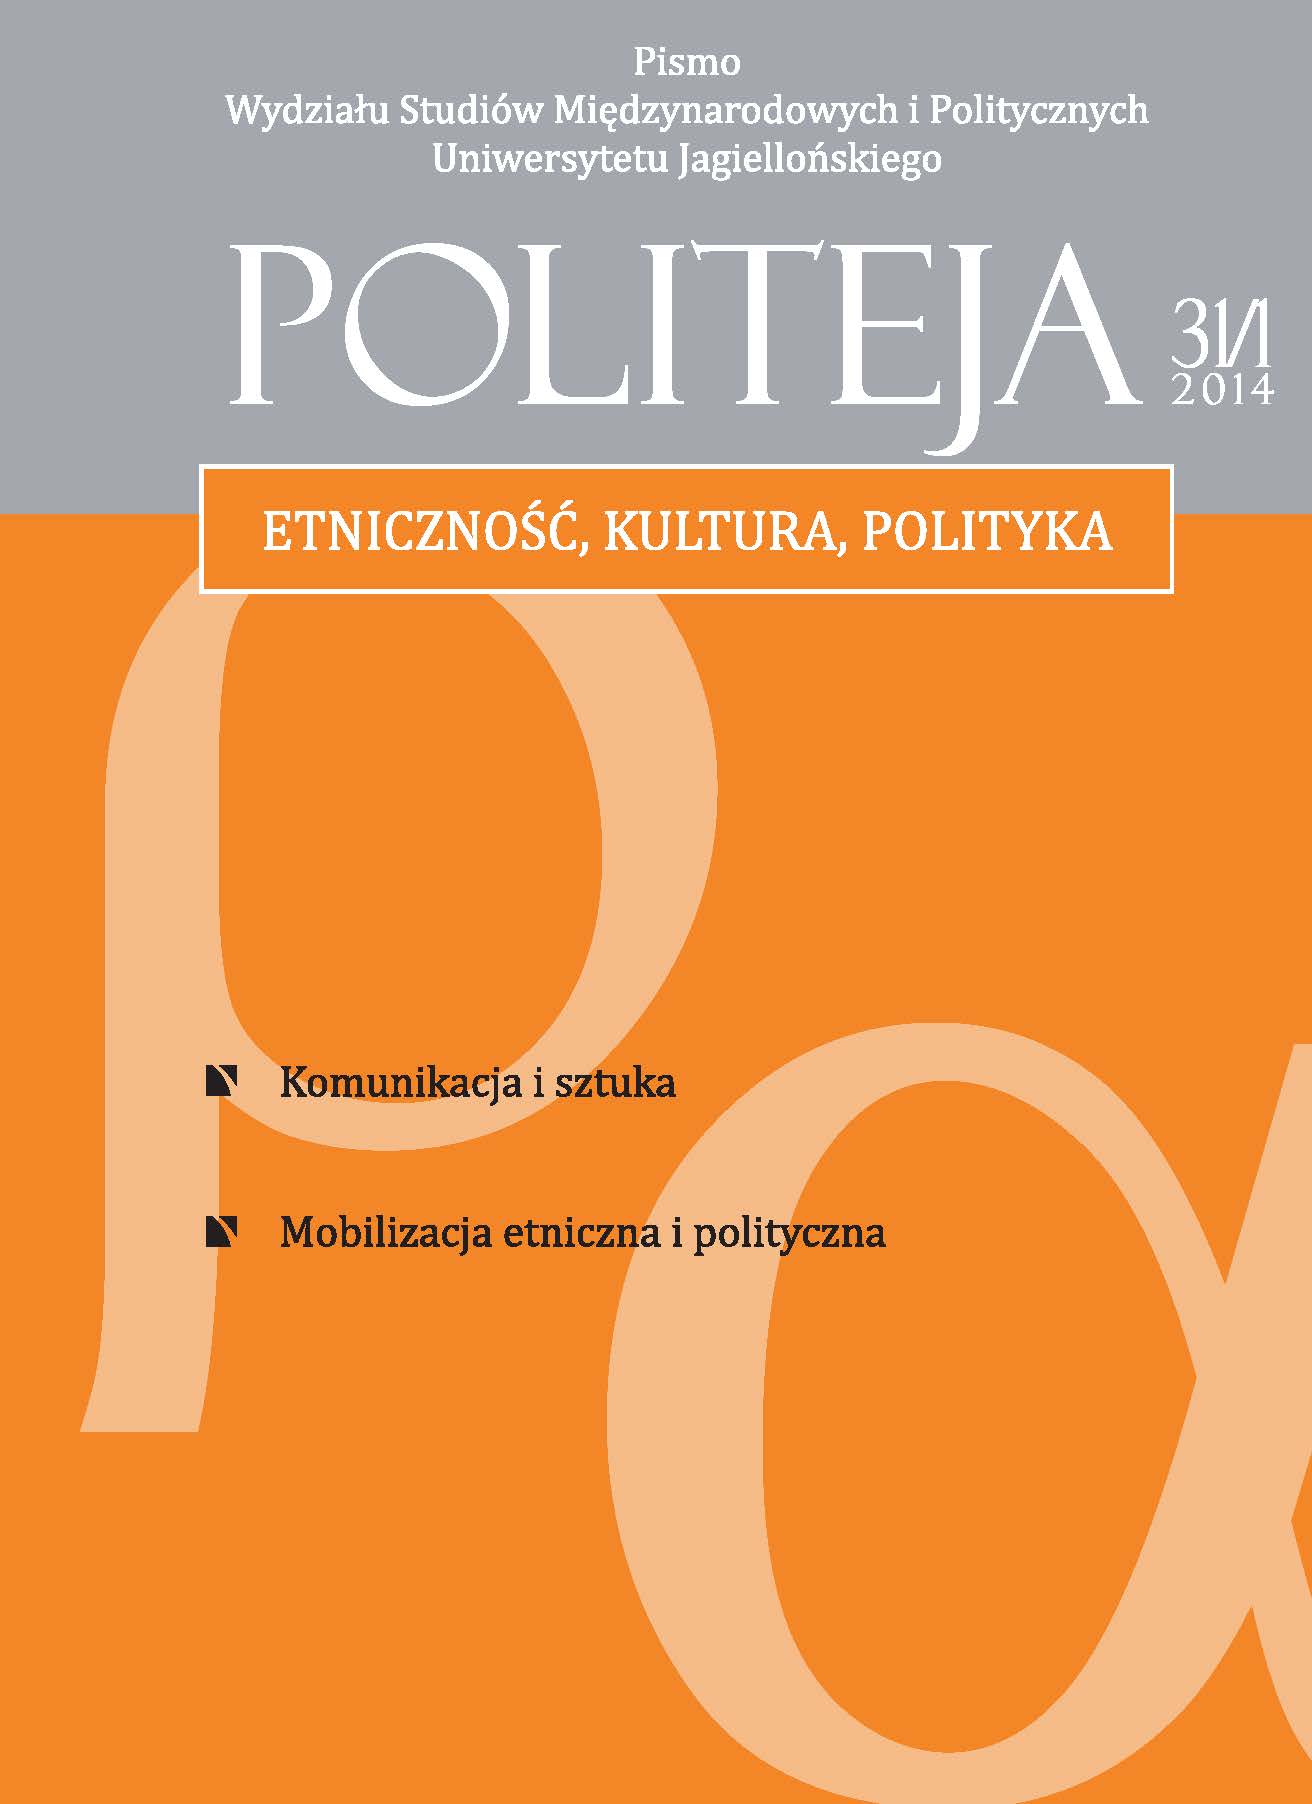 					View Vol. 11 No. 5 (31/1) (2014): Etniczność, kultura, polityka
				